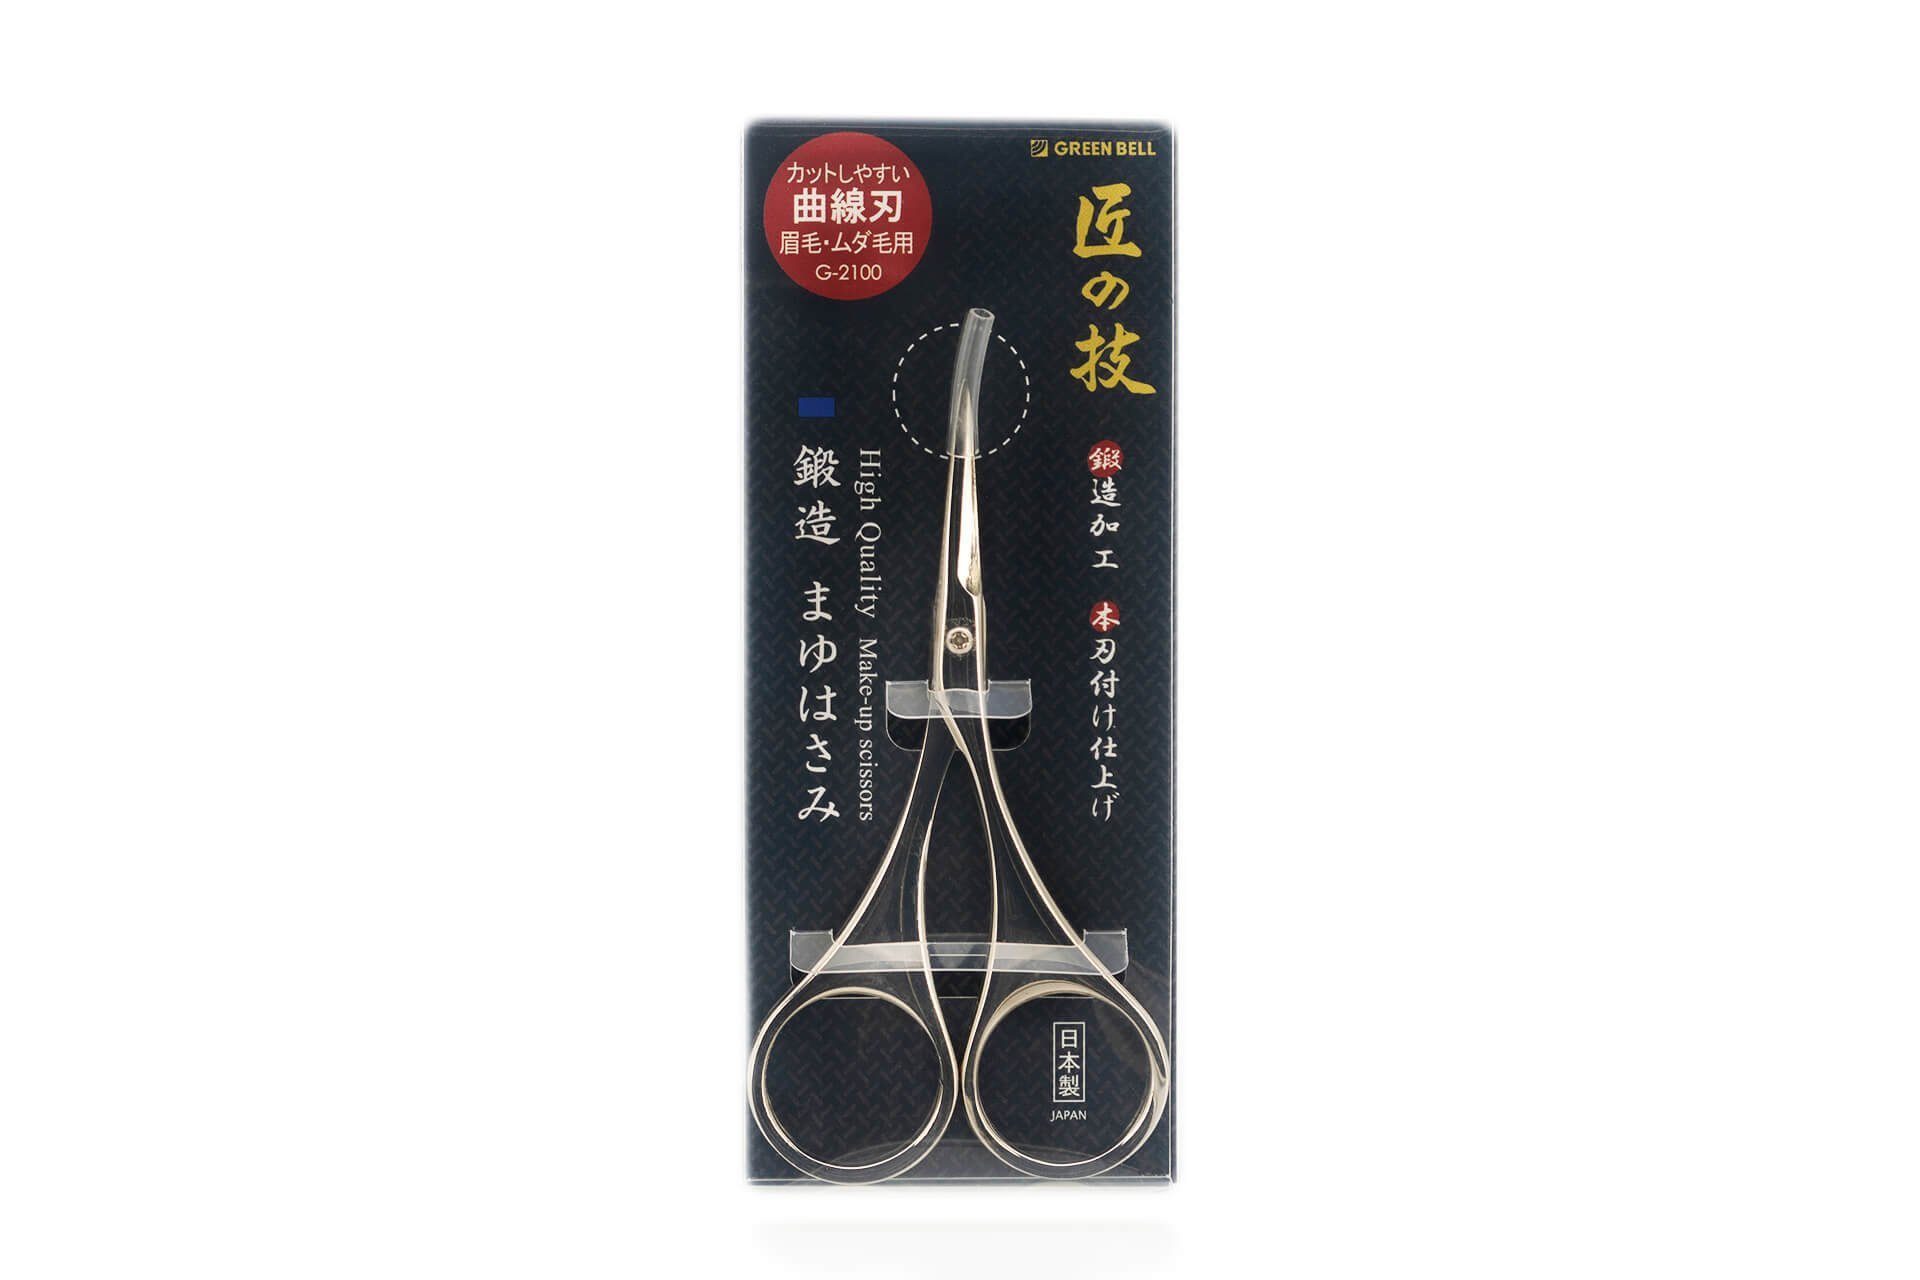 Seki EDGE Augenbrauenschere Augenbrauenschere geschmiedet 9.3x5x0.8 Qualitätsprodukt G-2100 aus cm, Japan handgeschärftes